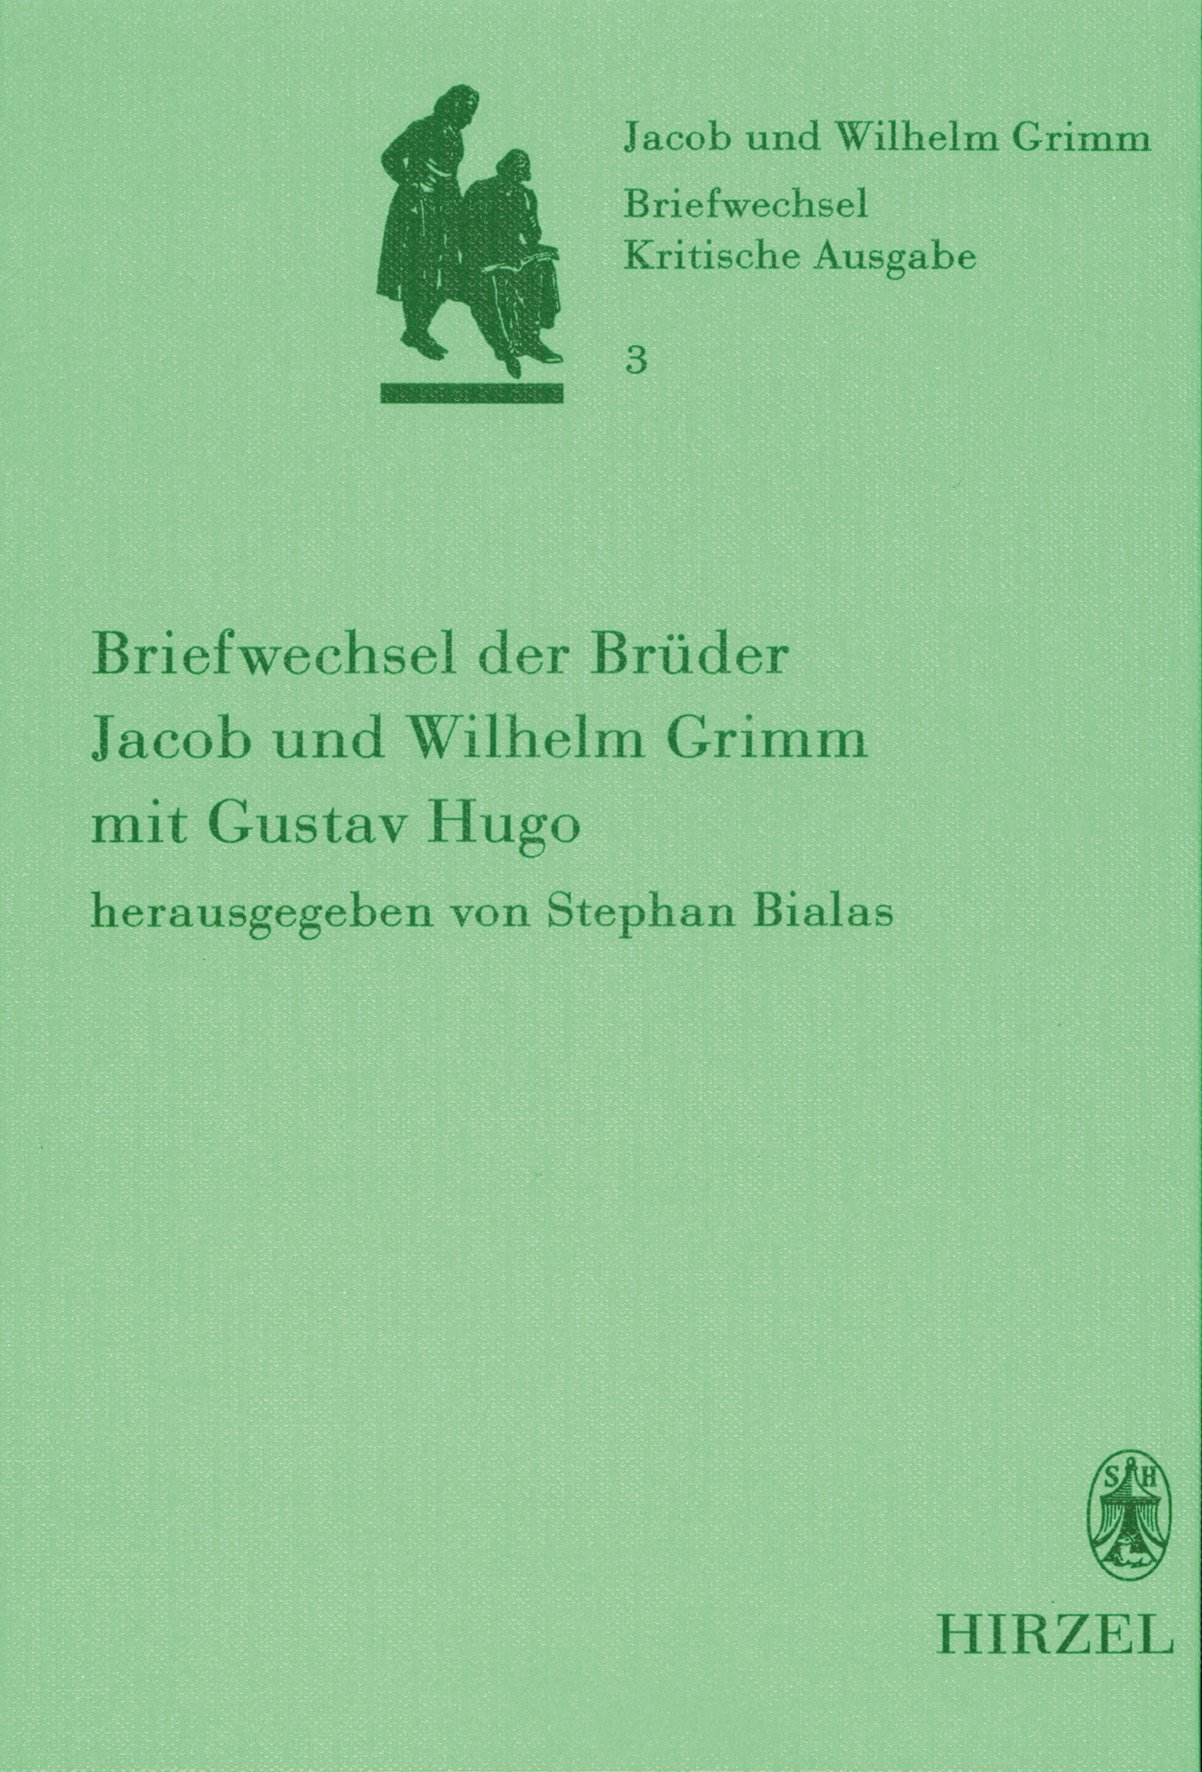 Band 3: Briefwechsel der Brüder Jacob und Wilhelm Grimm mit Gustav Hugo